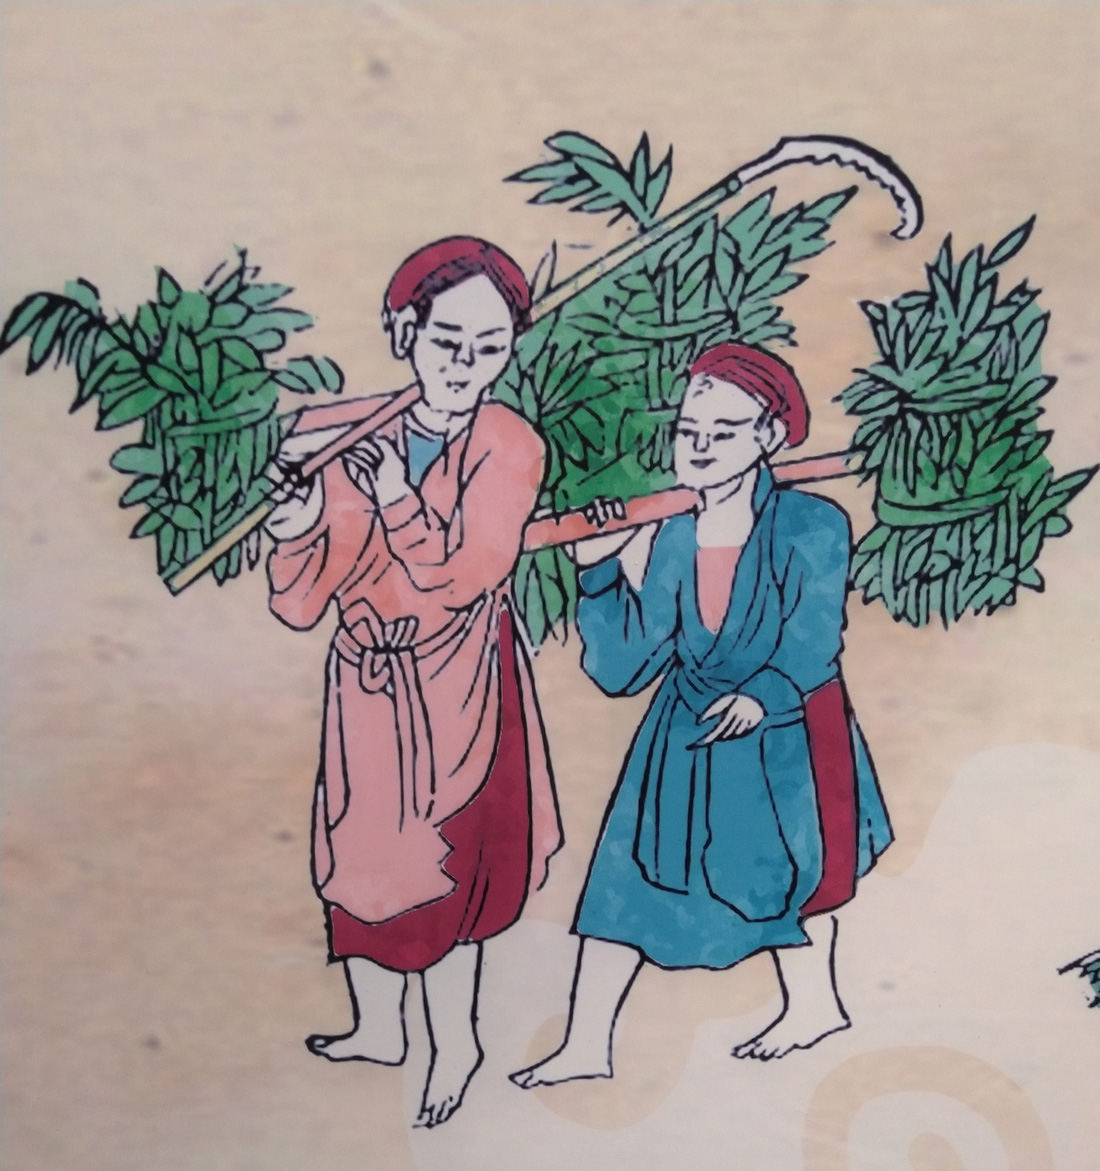 Tết Đoan Ngọ - Tết kì lạ nhất của người Việt qua tranh, tư liệu của tác giả Pháp - Ảnh 14.